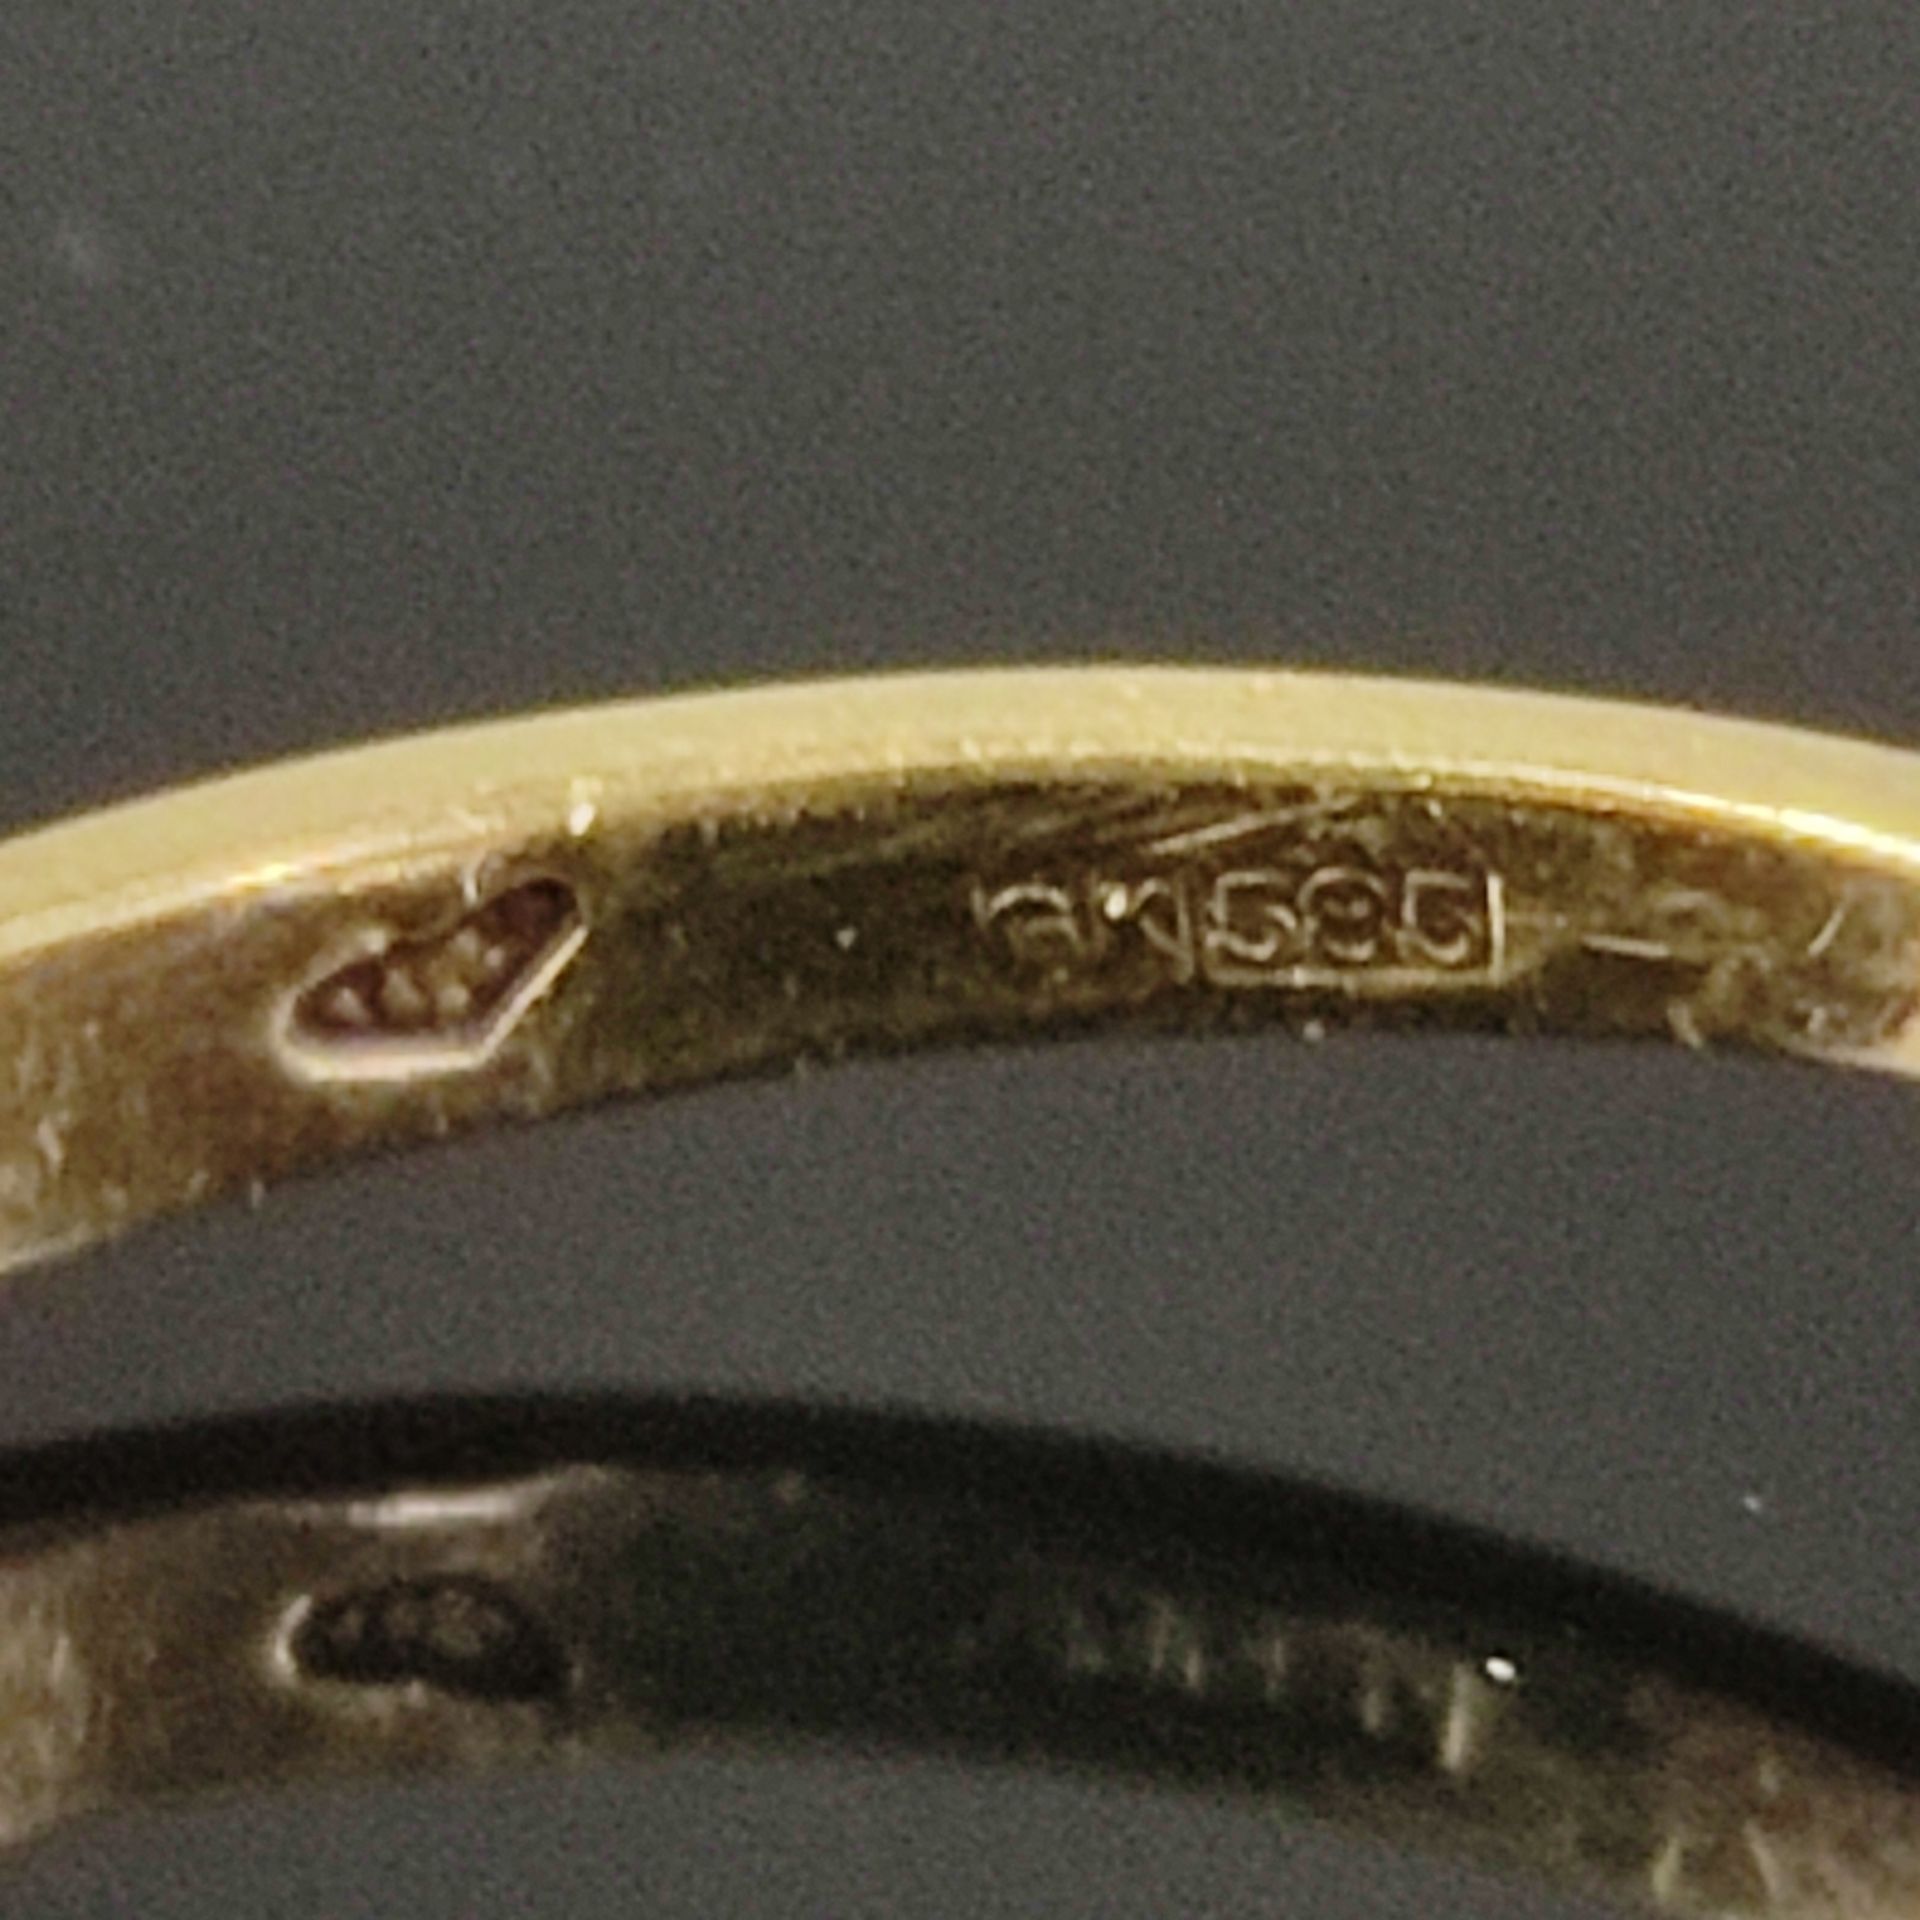 Chrysopras-Goldring, 585/14K Gelbgold, 1,7g, besetzt mit einer polierten Chrysopras-Kugel von schön - Bild 3 aus 3